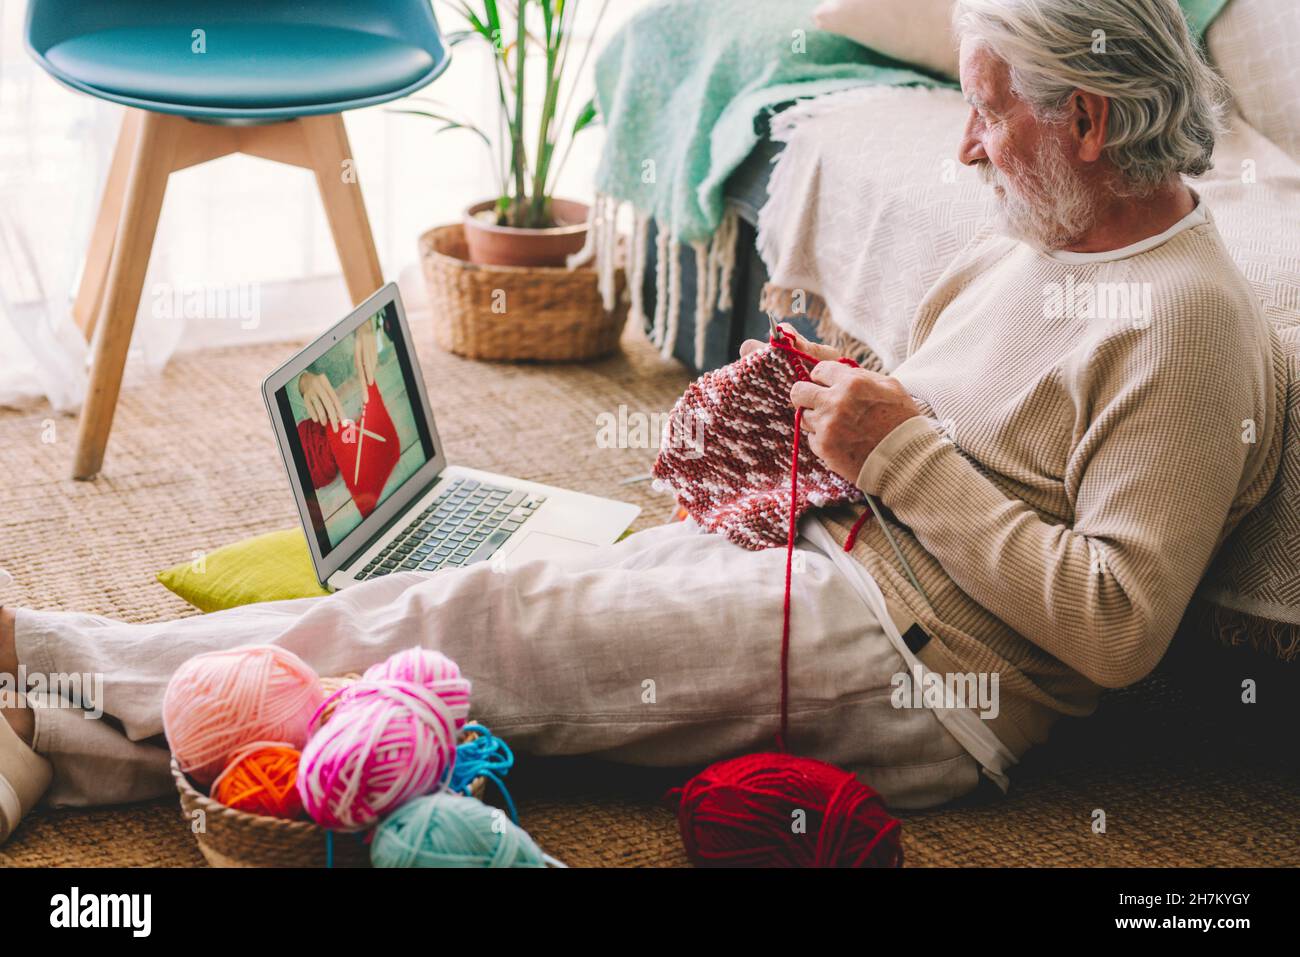 Senior man knitting while watching tutorial through laptop at home Stock Photo